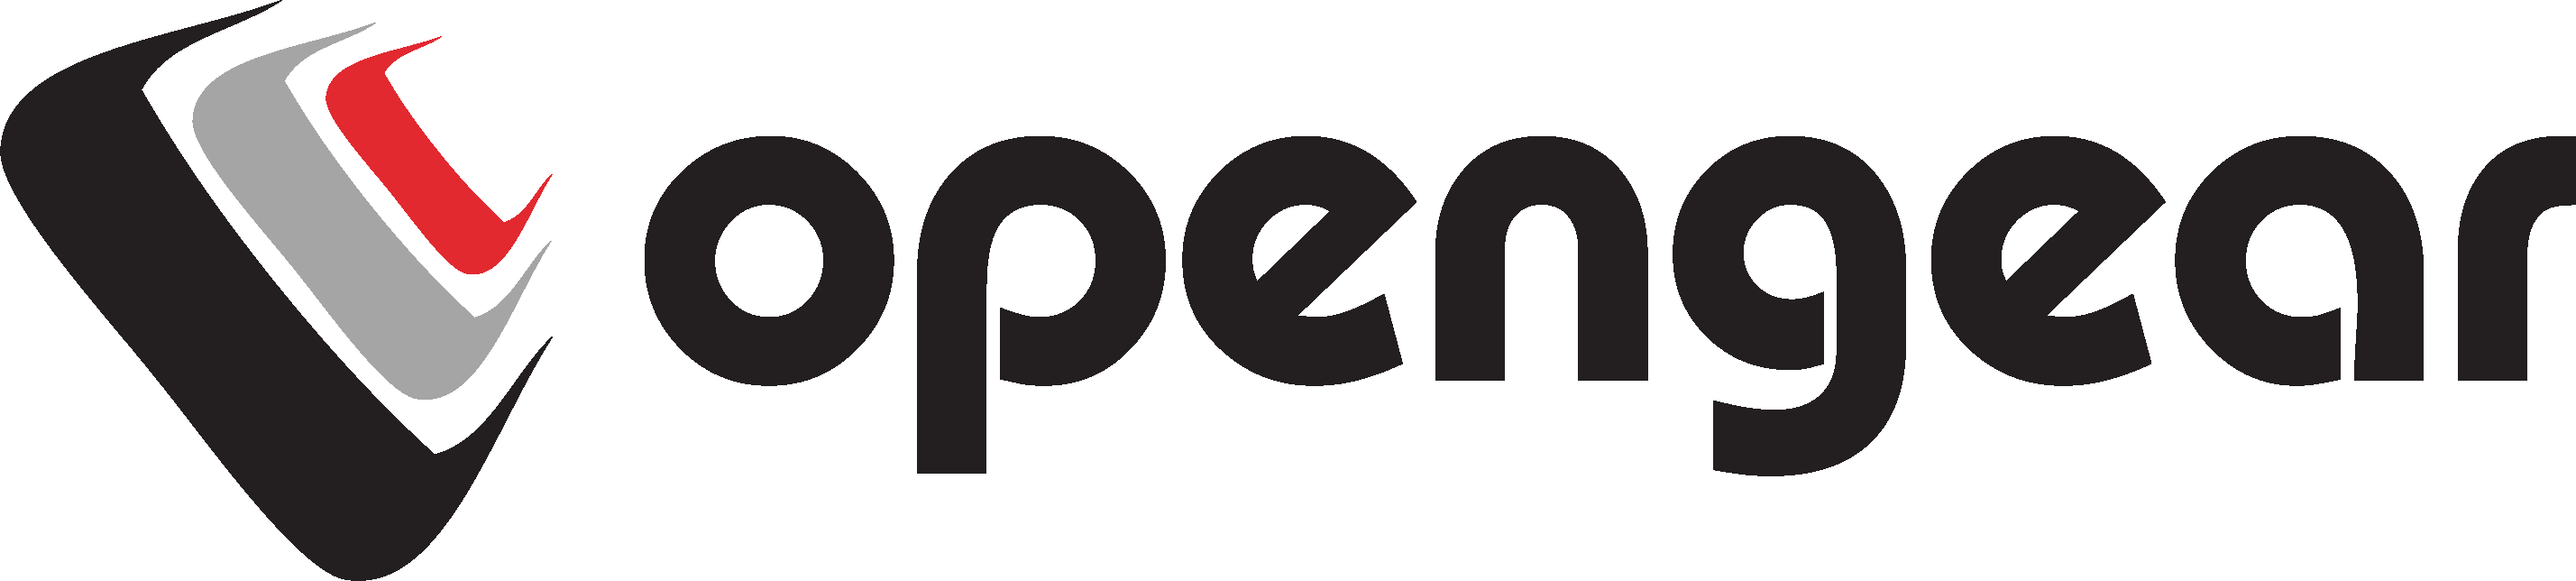 Opengear_logo